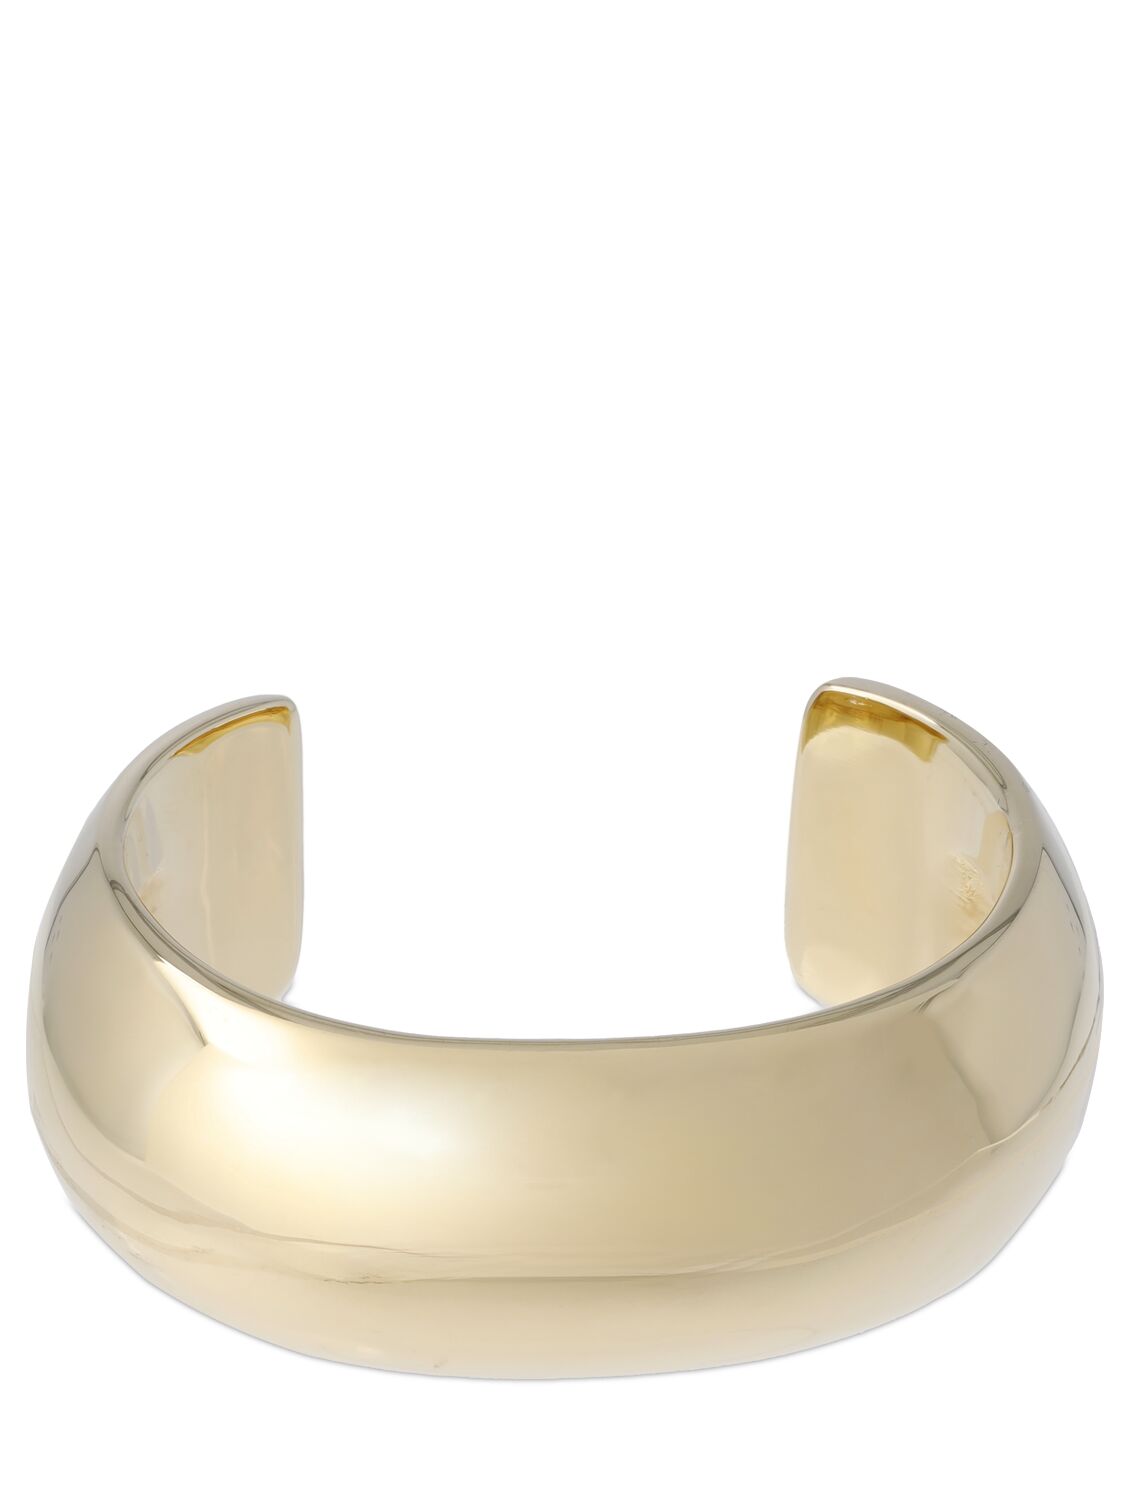 Jennifer Fisher The Small Globe Cuff Bracelet In Gold